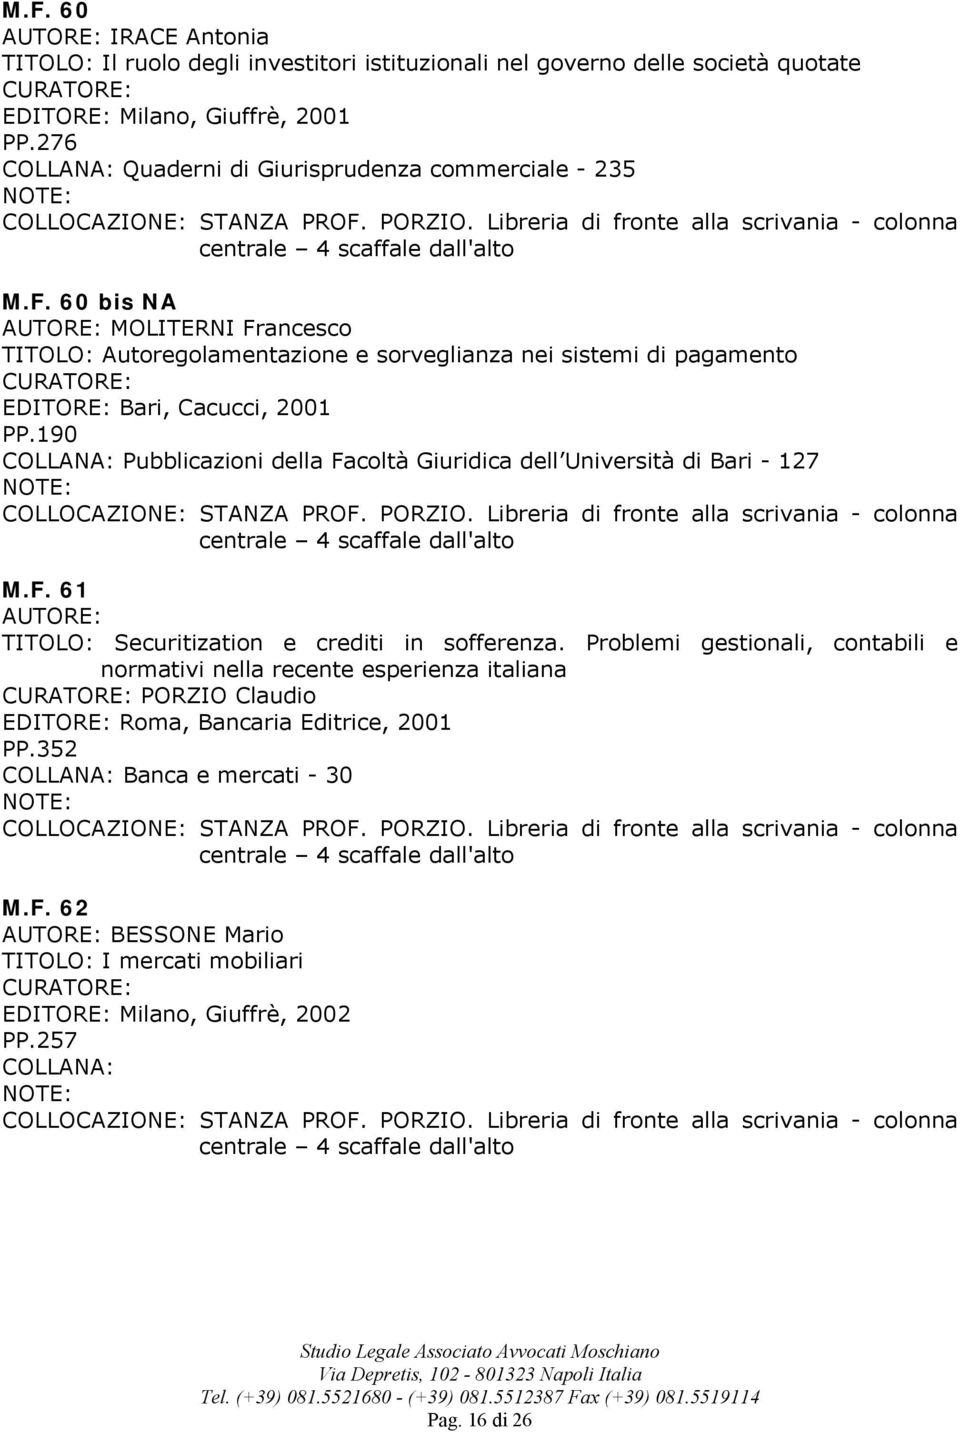 60 bis NA MOLITERNI Francesco TITOLO: Autoregolamentazione e sorveglianza nei sistemi di pagamento EDITORE: Bari, Cacucci, 2001 PP.